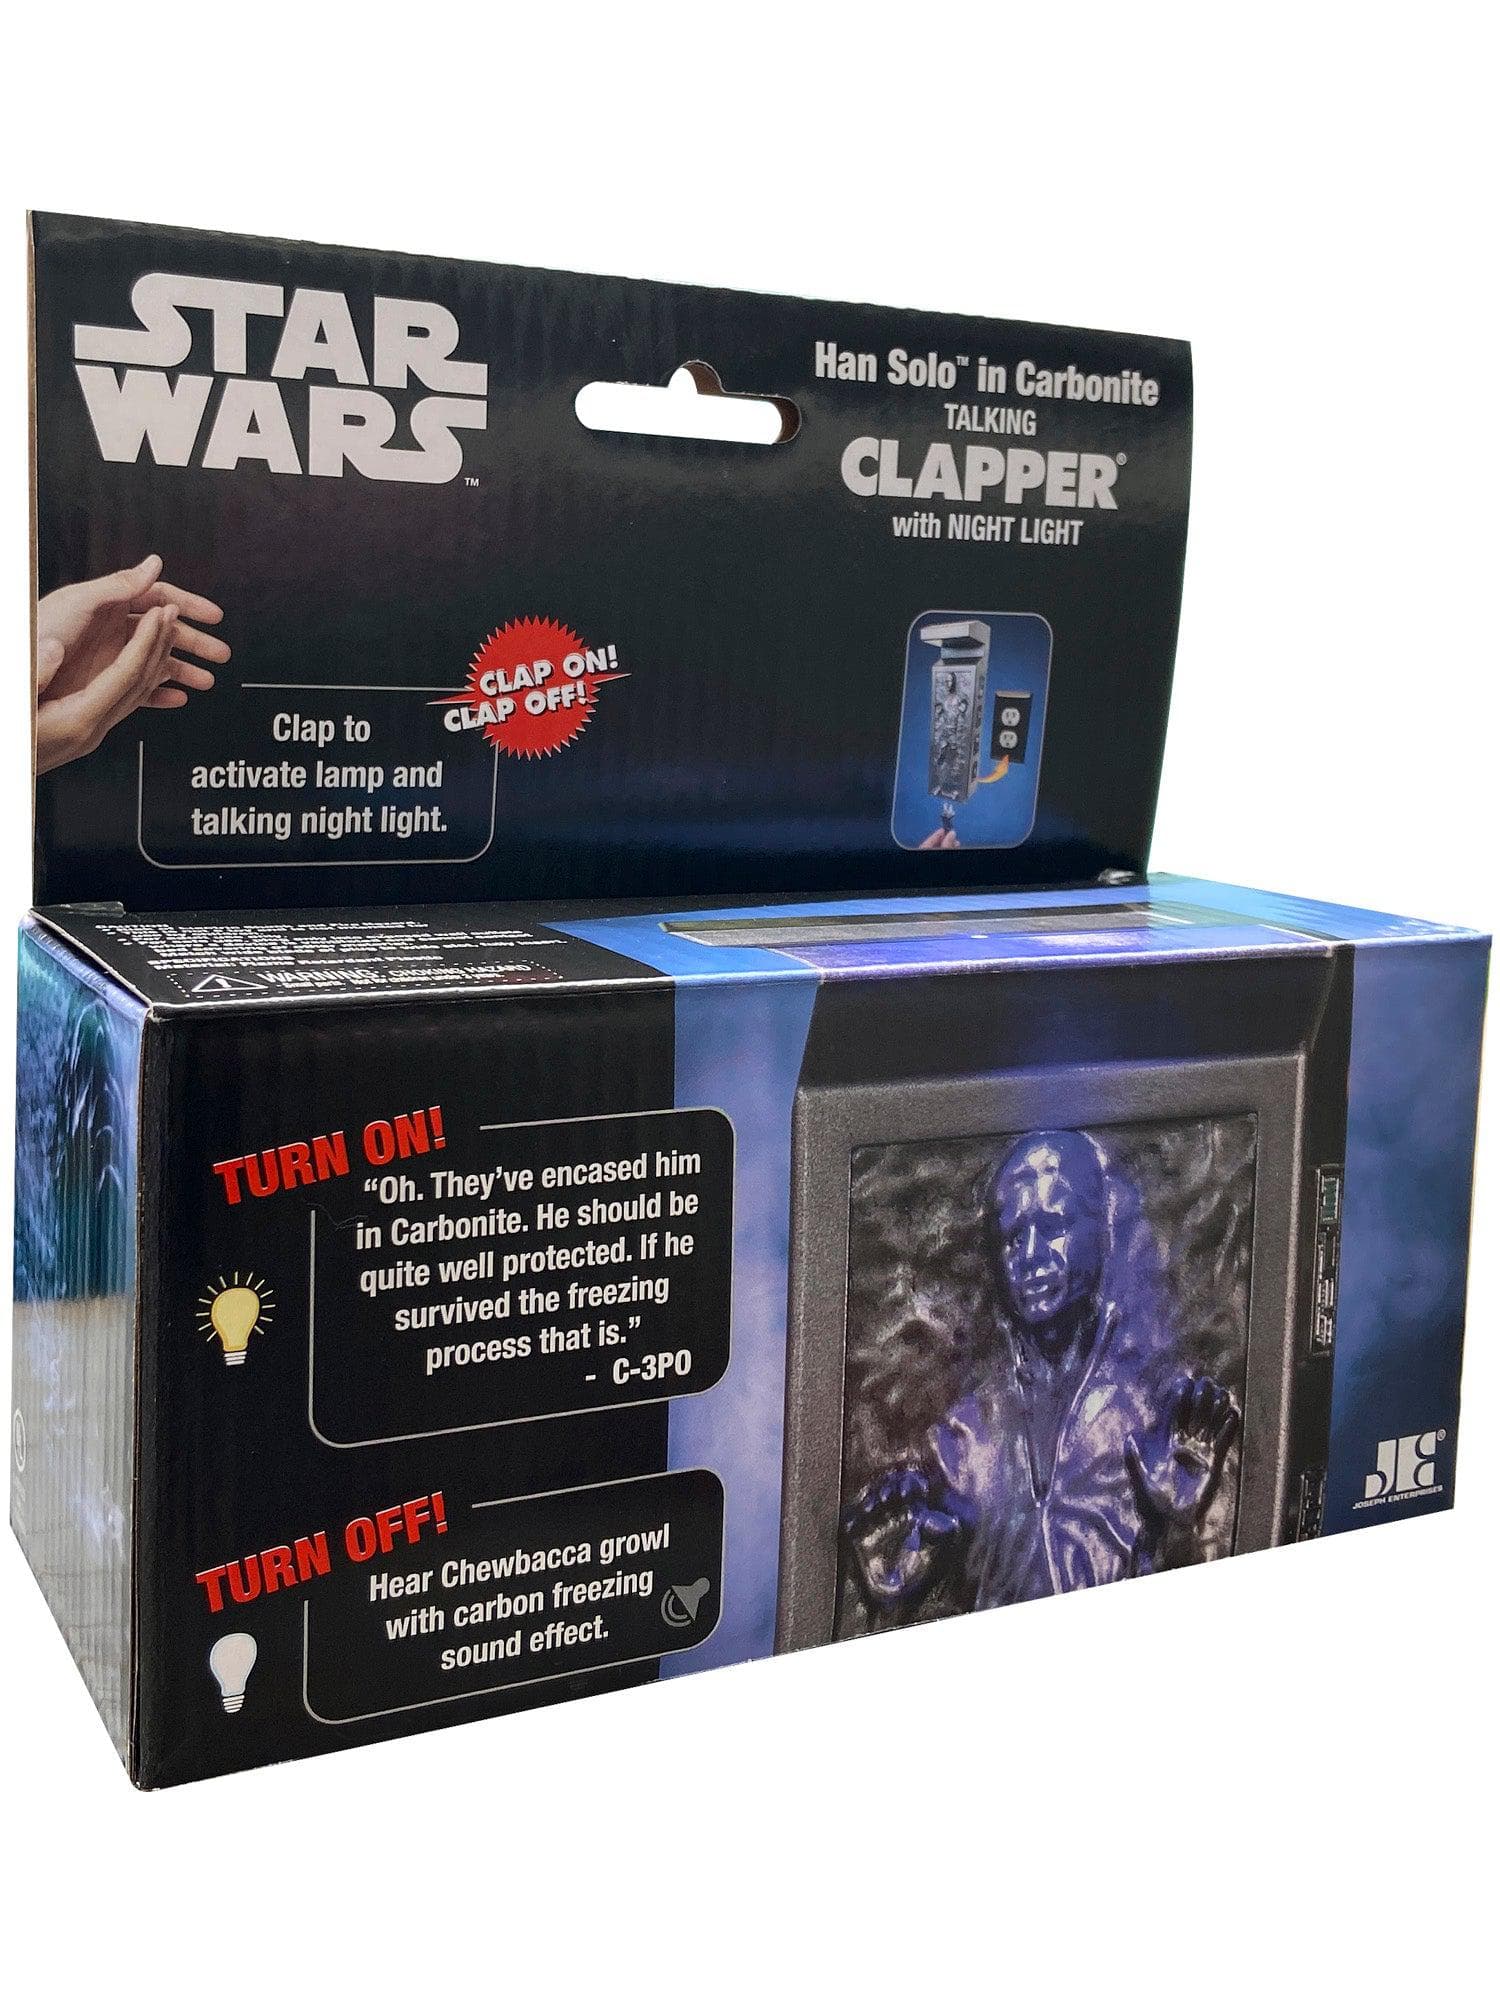 Star Wars Han Solo Talking Clapper - costumes.com